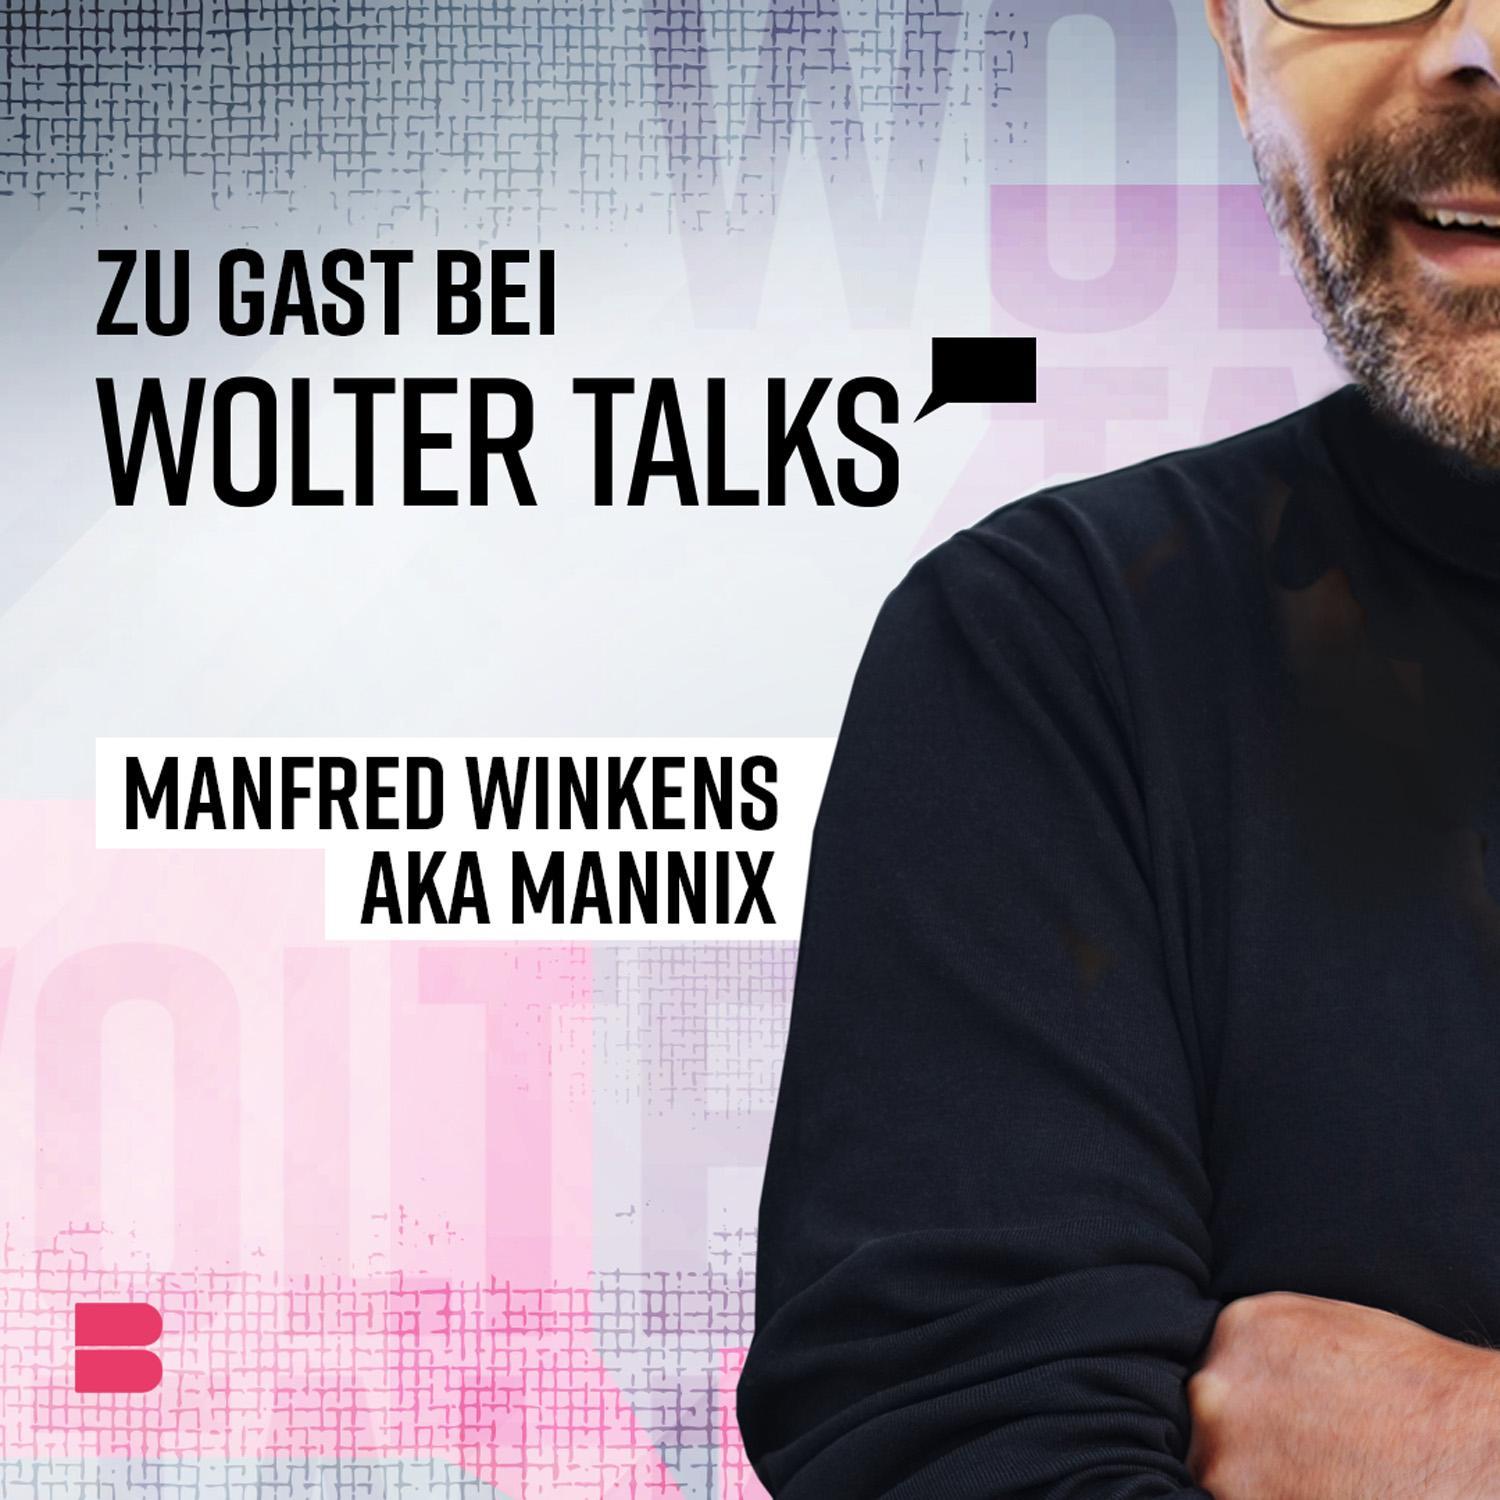 Eine der bekanntesten Stimmen aus dem deutschen Fernsehen – Mannix!